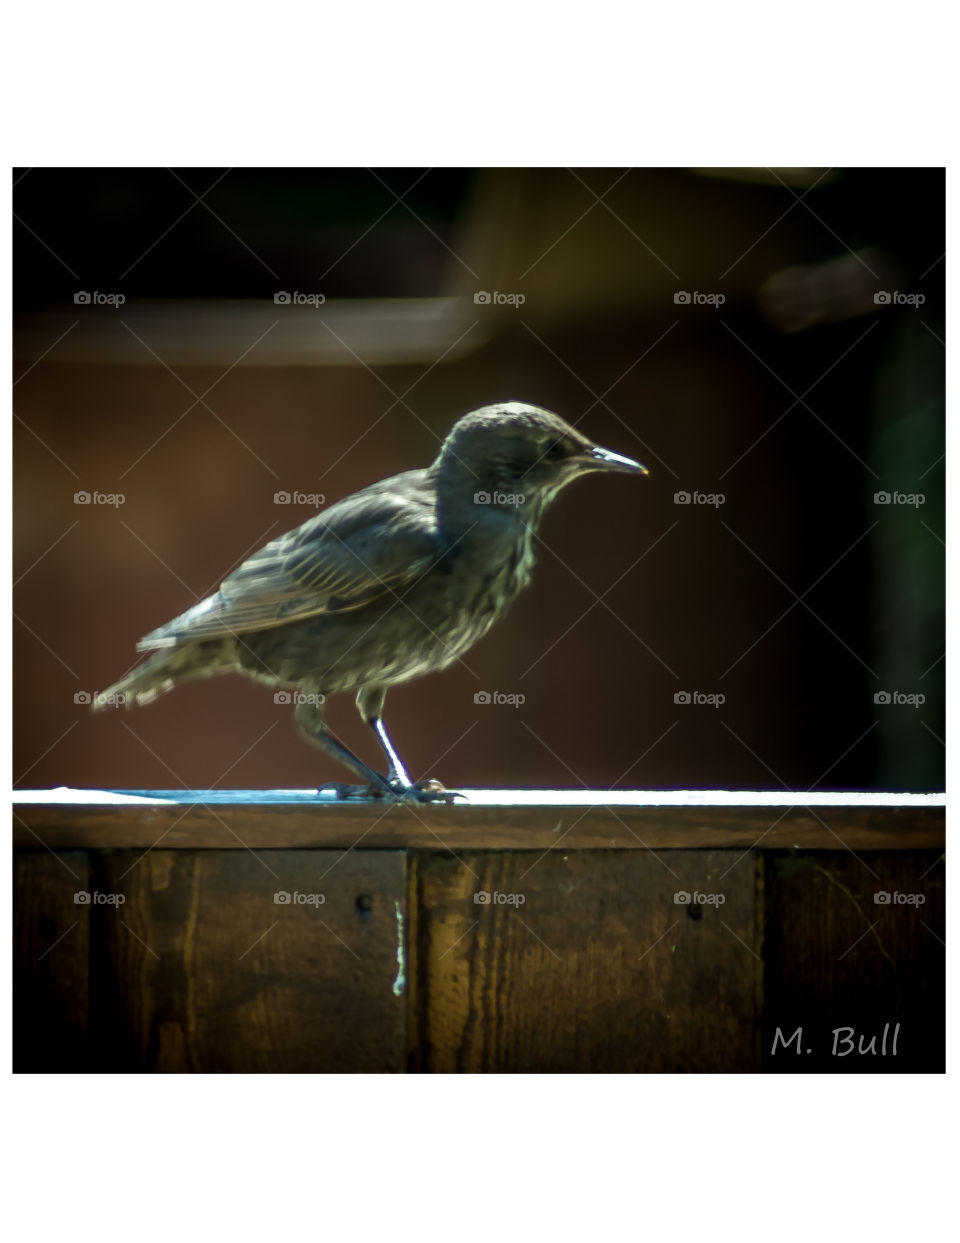 Bird on a fence